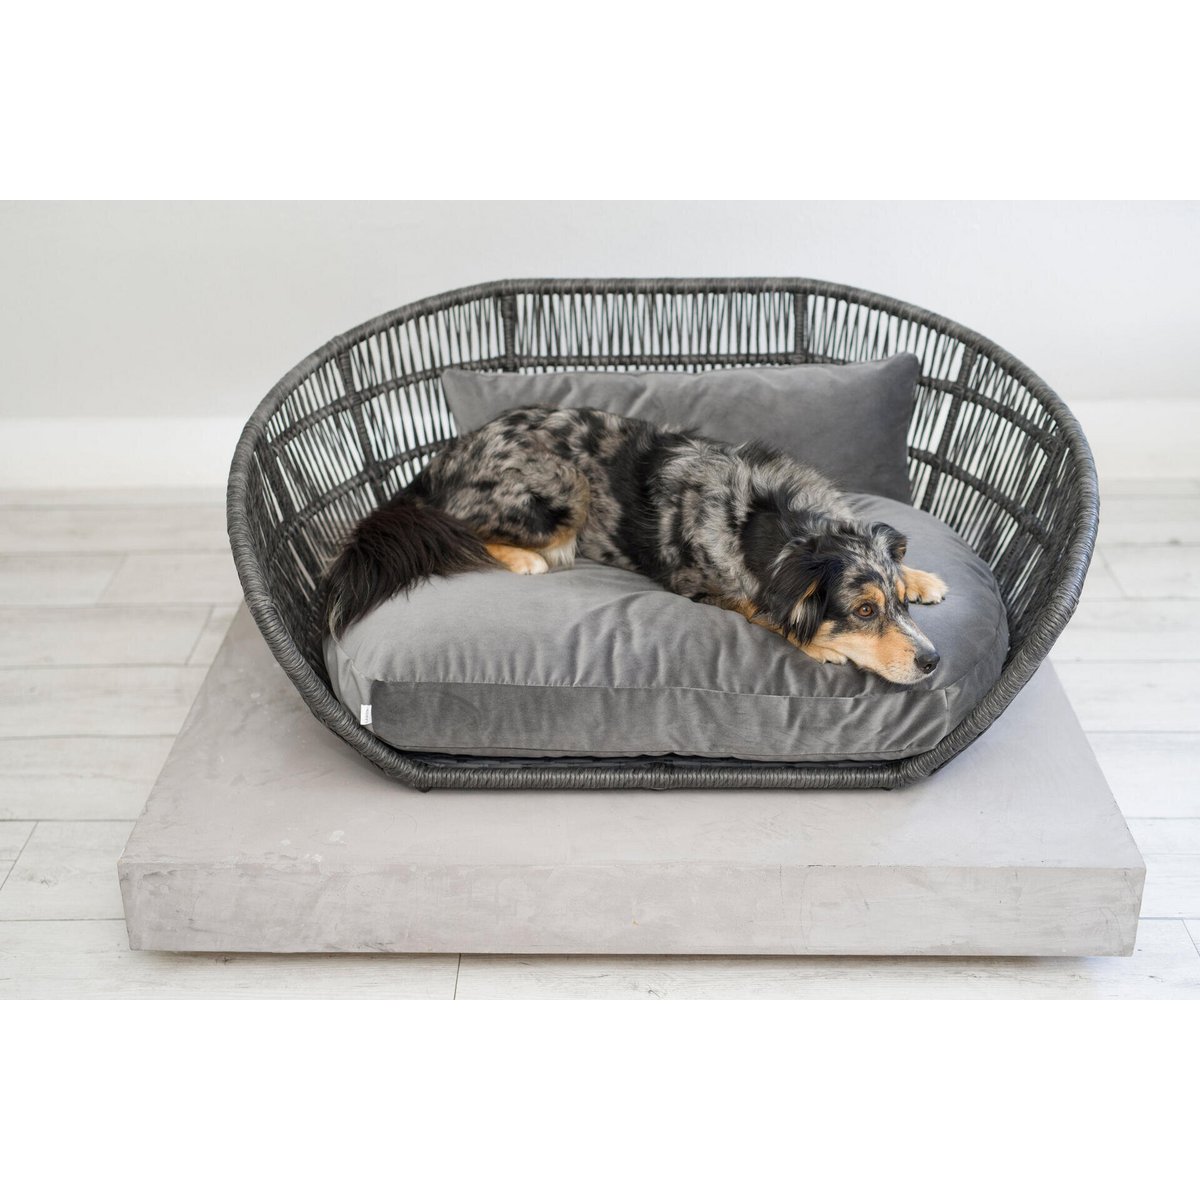 PRADO Design hondenmand - Collectie OXFORDHet bekroonde hondenbed PRADO combineert traditioneel vakmanschap met comfort en stijl. Het is zowel binnen als buiten een trendy designobject voor moderne hondenhuiLABONIwafwafPRADO Design hondenmand - Collectie OXFORD